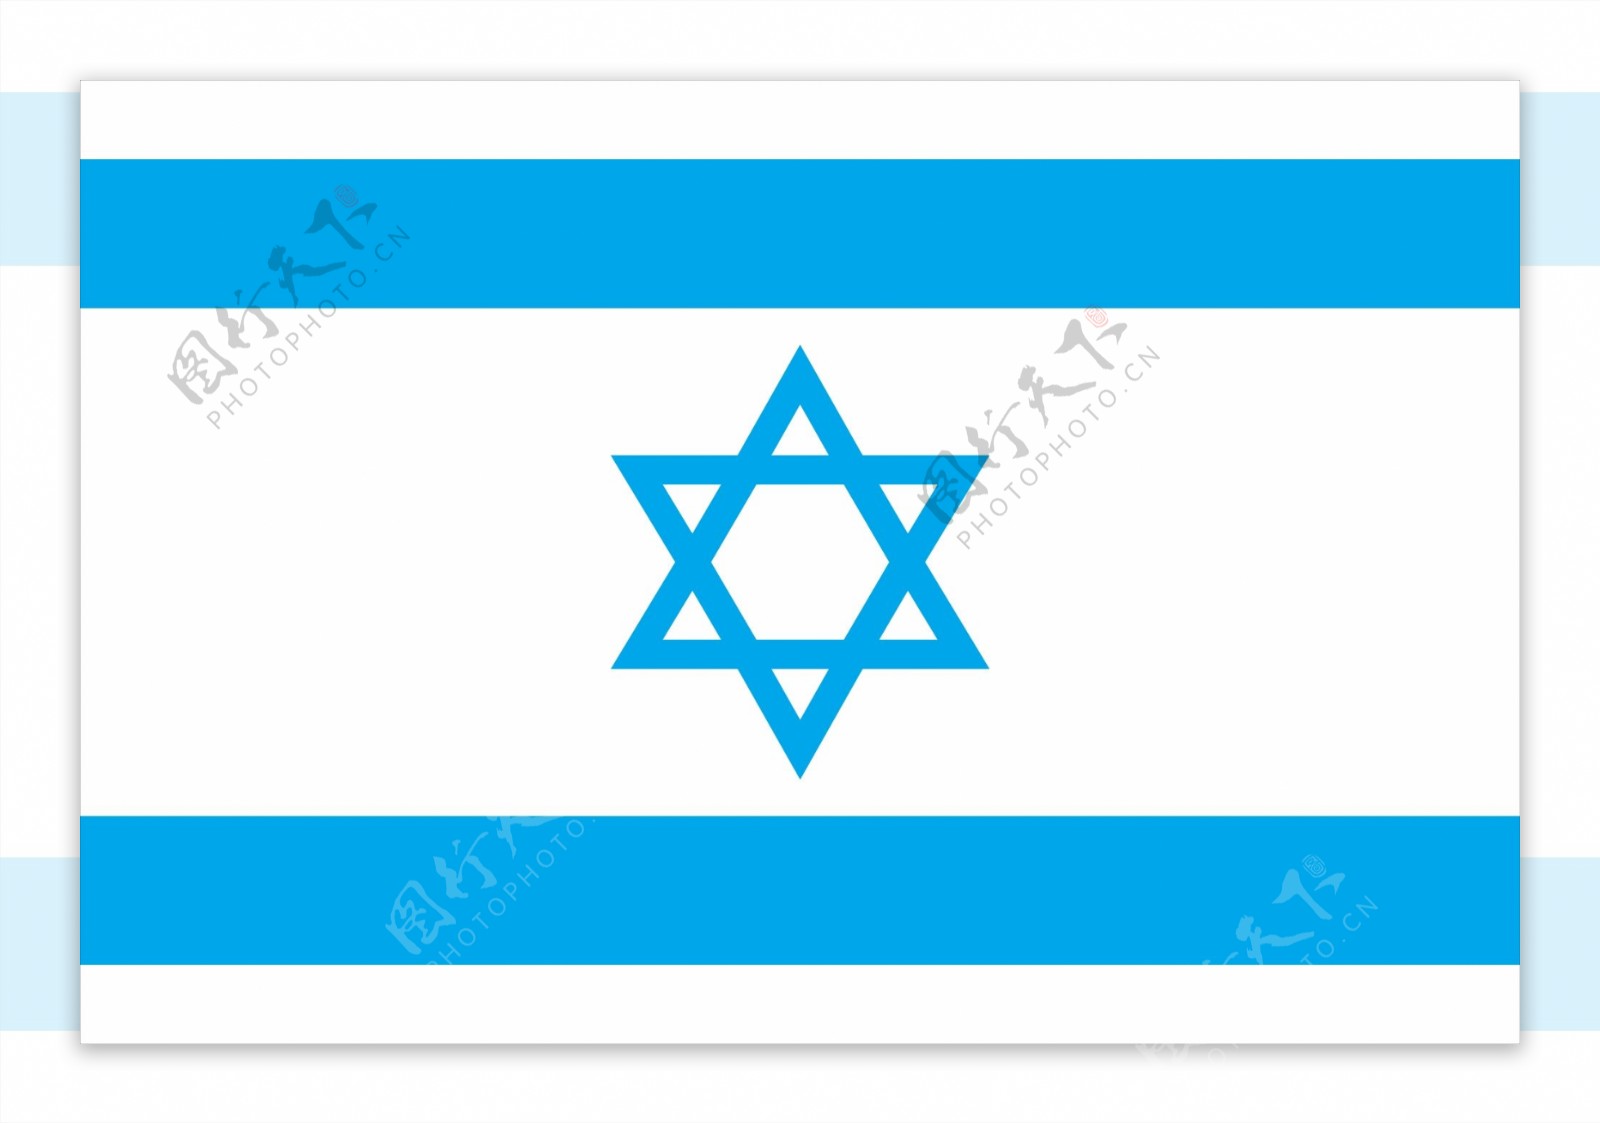 以色列国旗图片